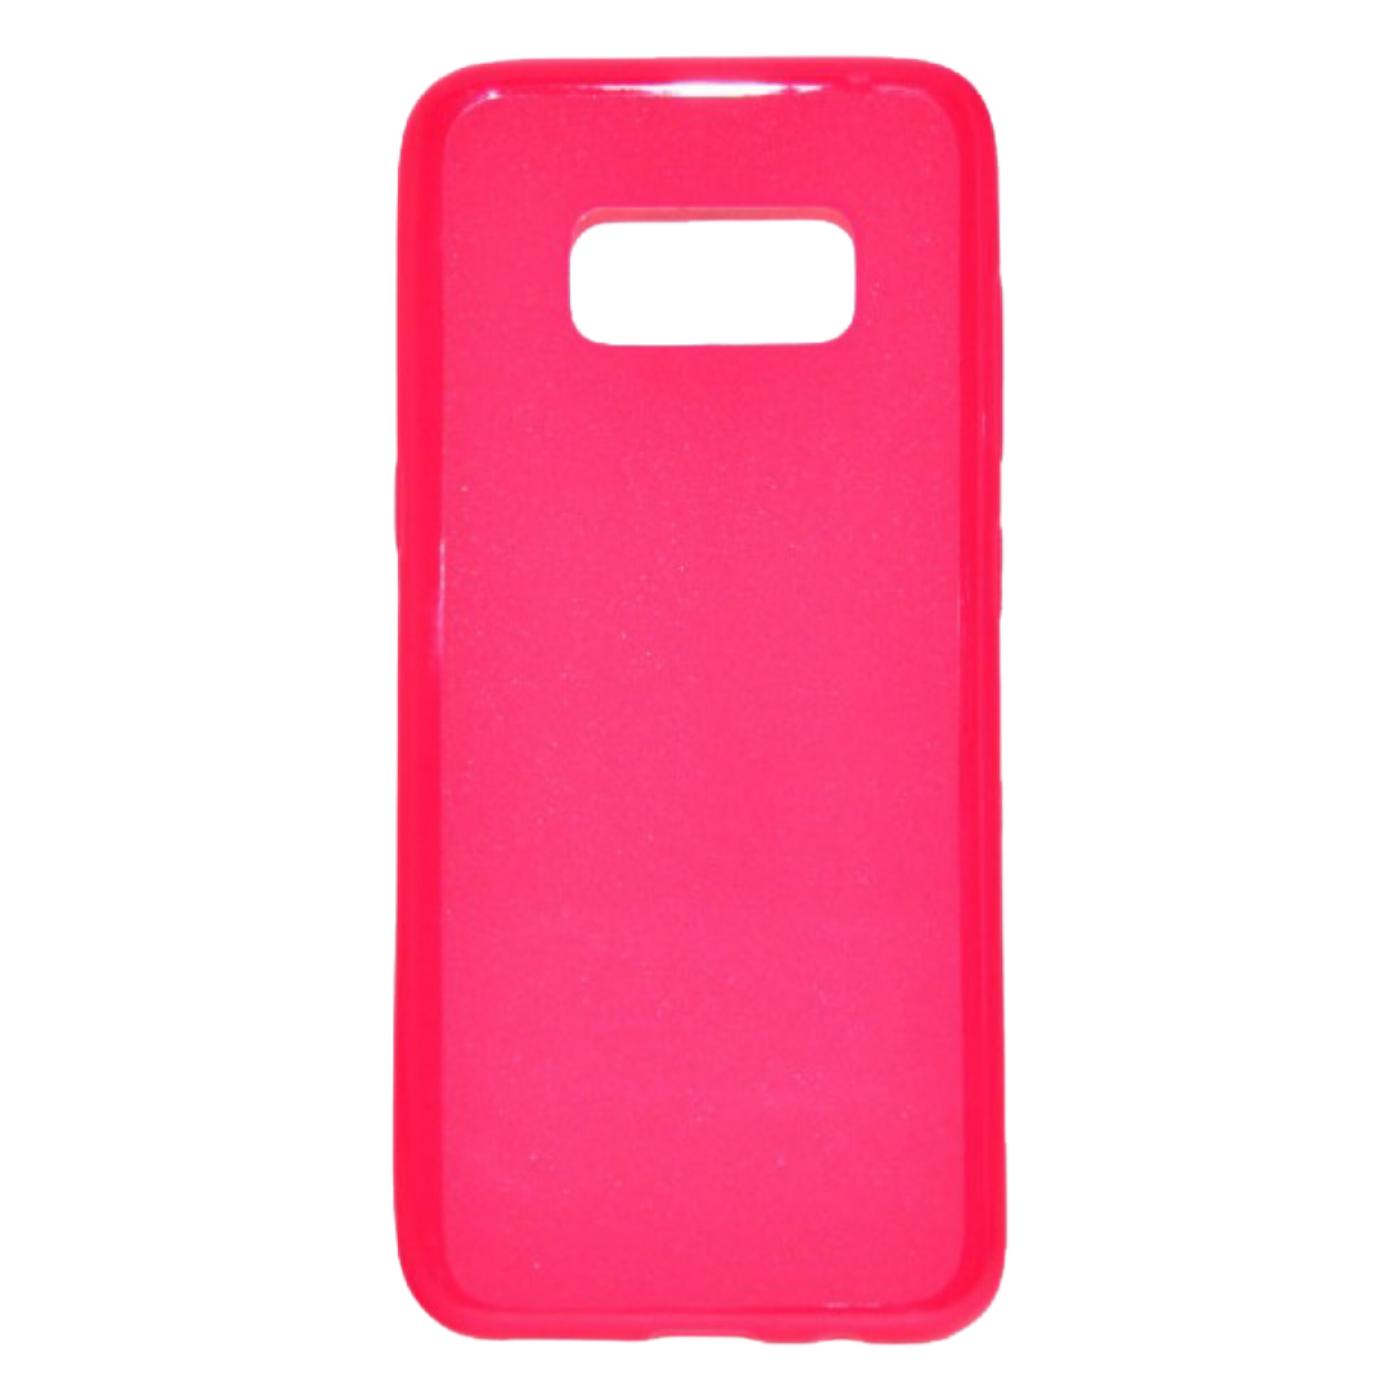 Futrola za mobitel Samsung S8 , ALIN, pink